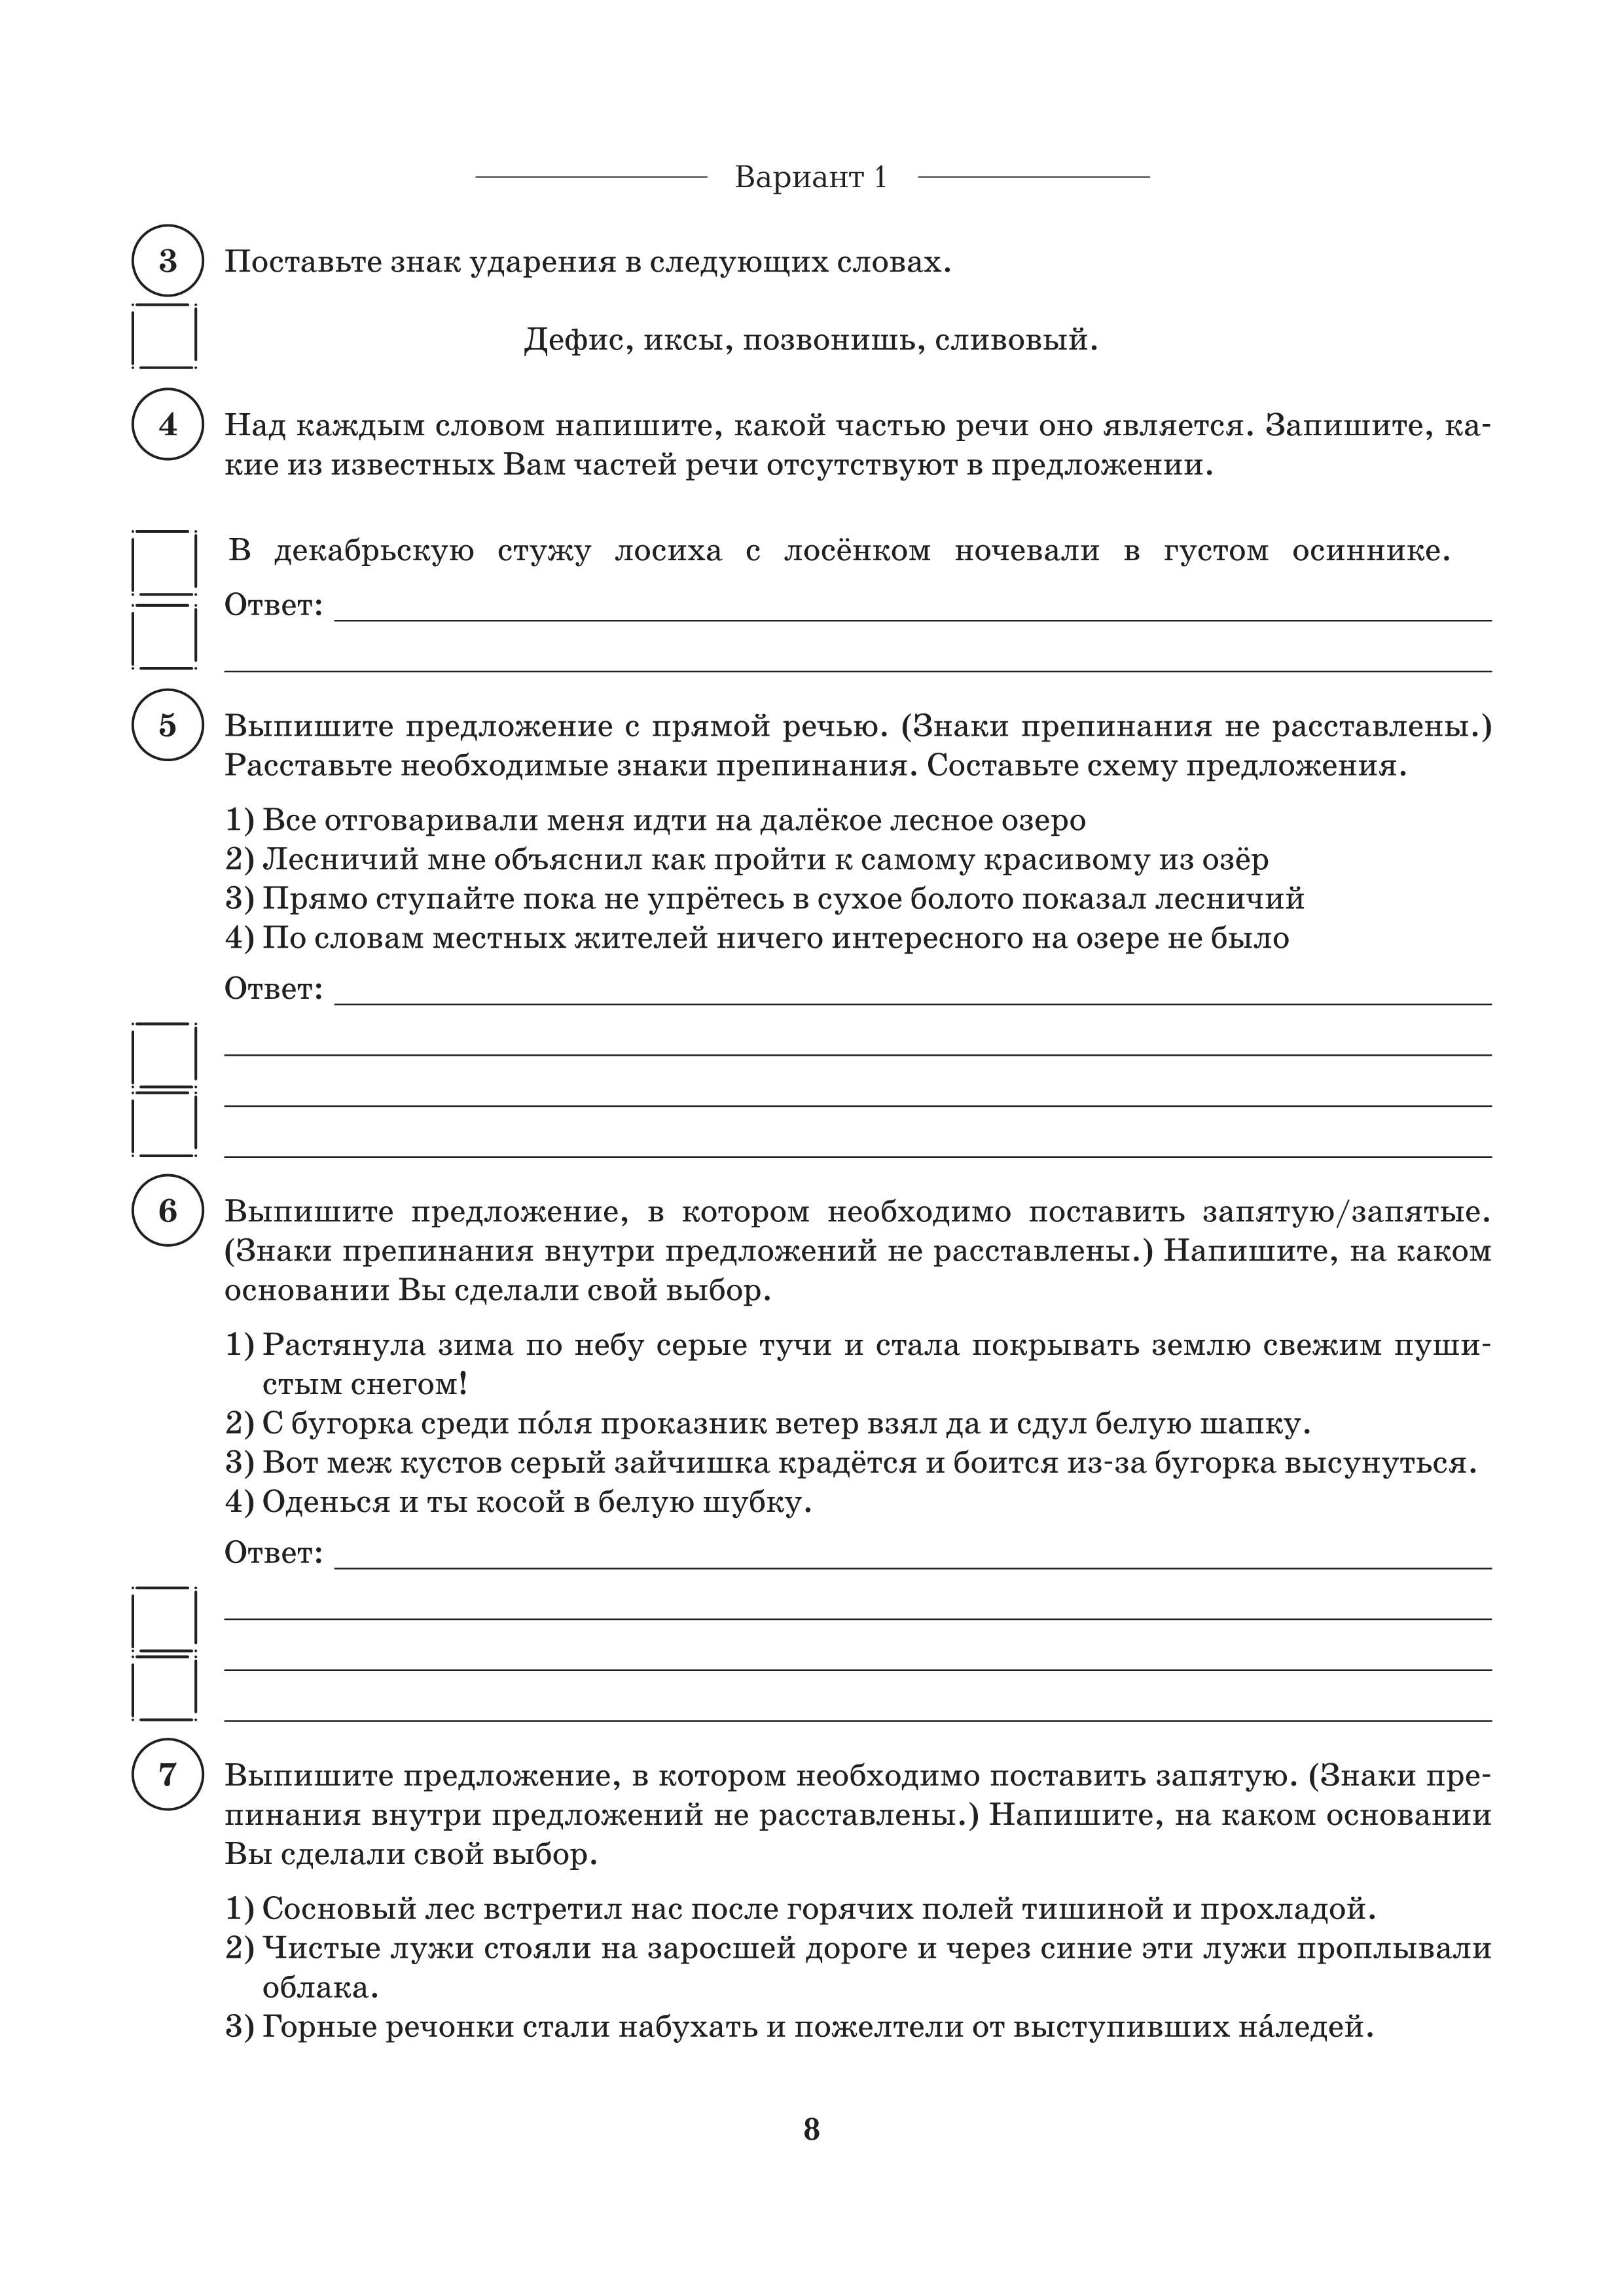 Русский язык. 5 класс. ВПР. 10 тренировочных вариантов. А4